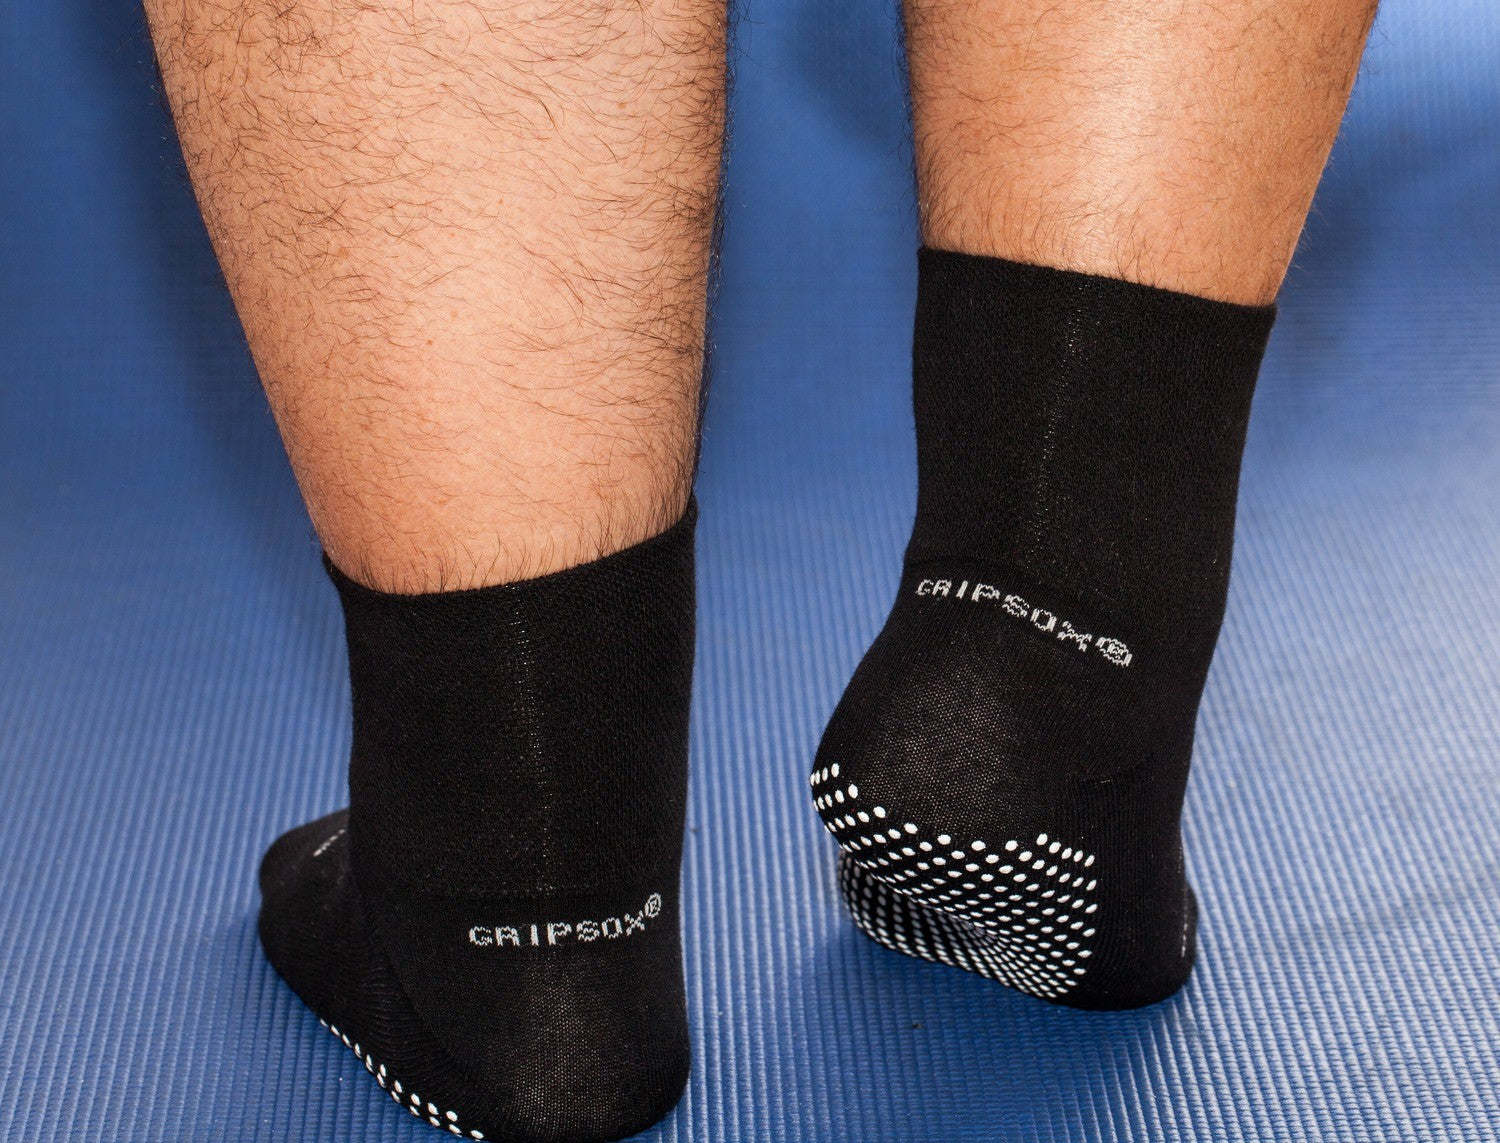 Ballet Non Slip Grip Sock in Black